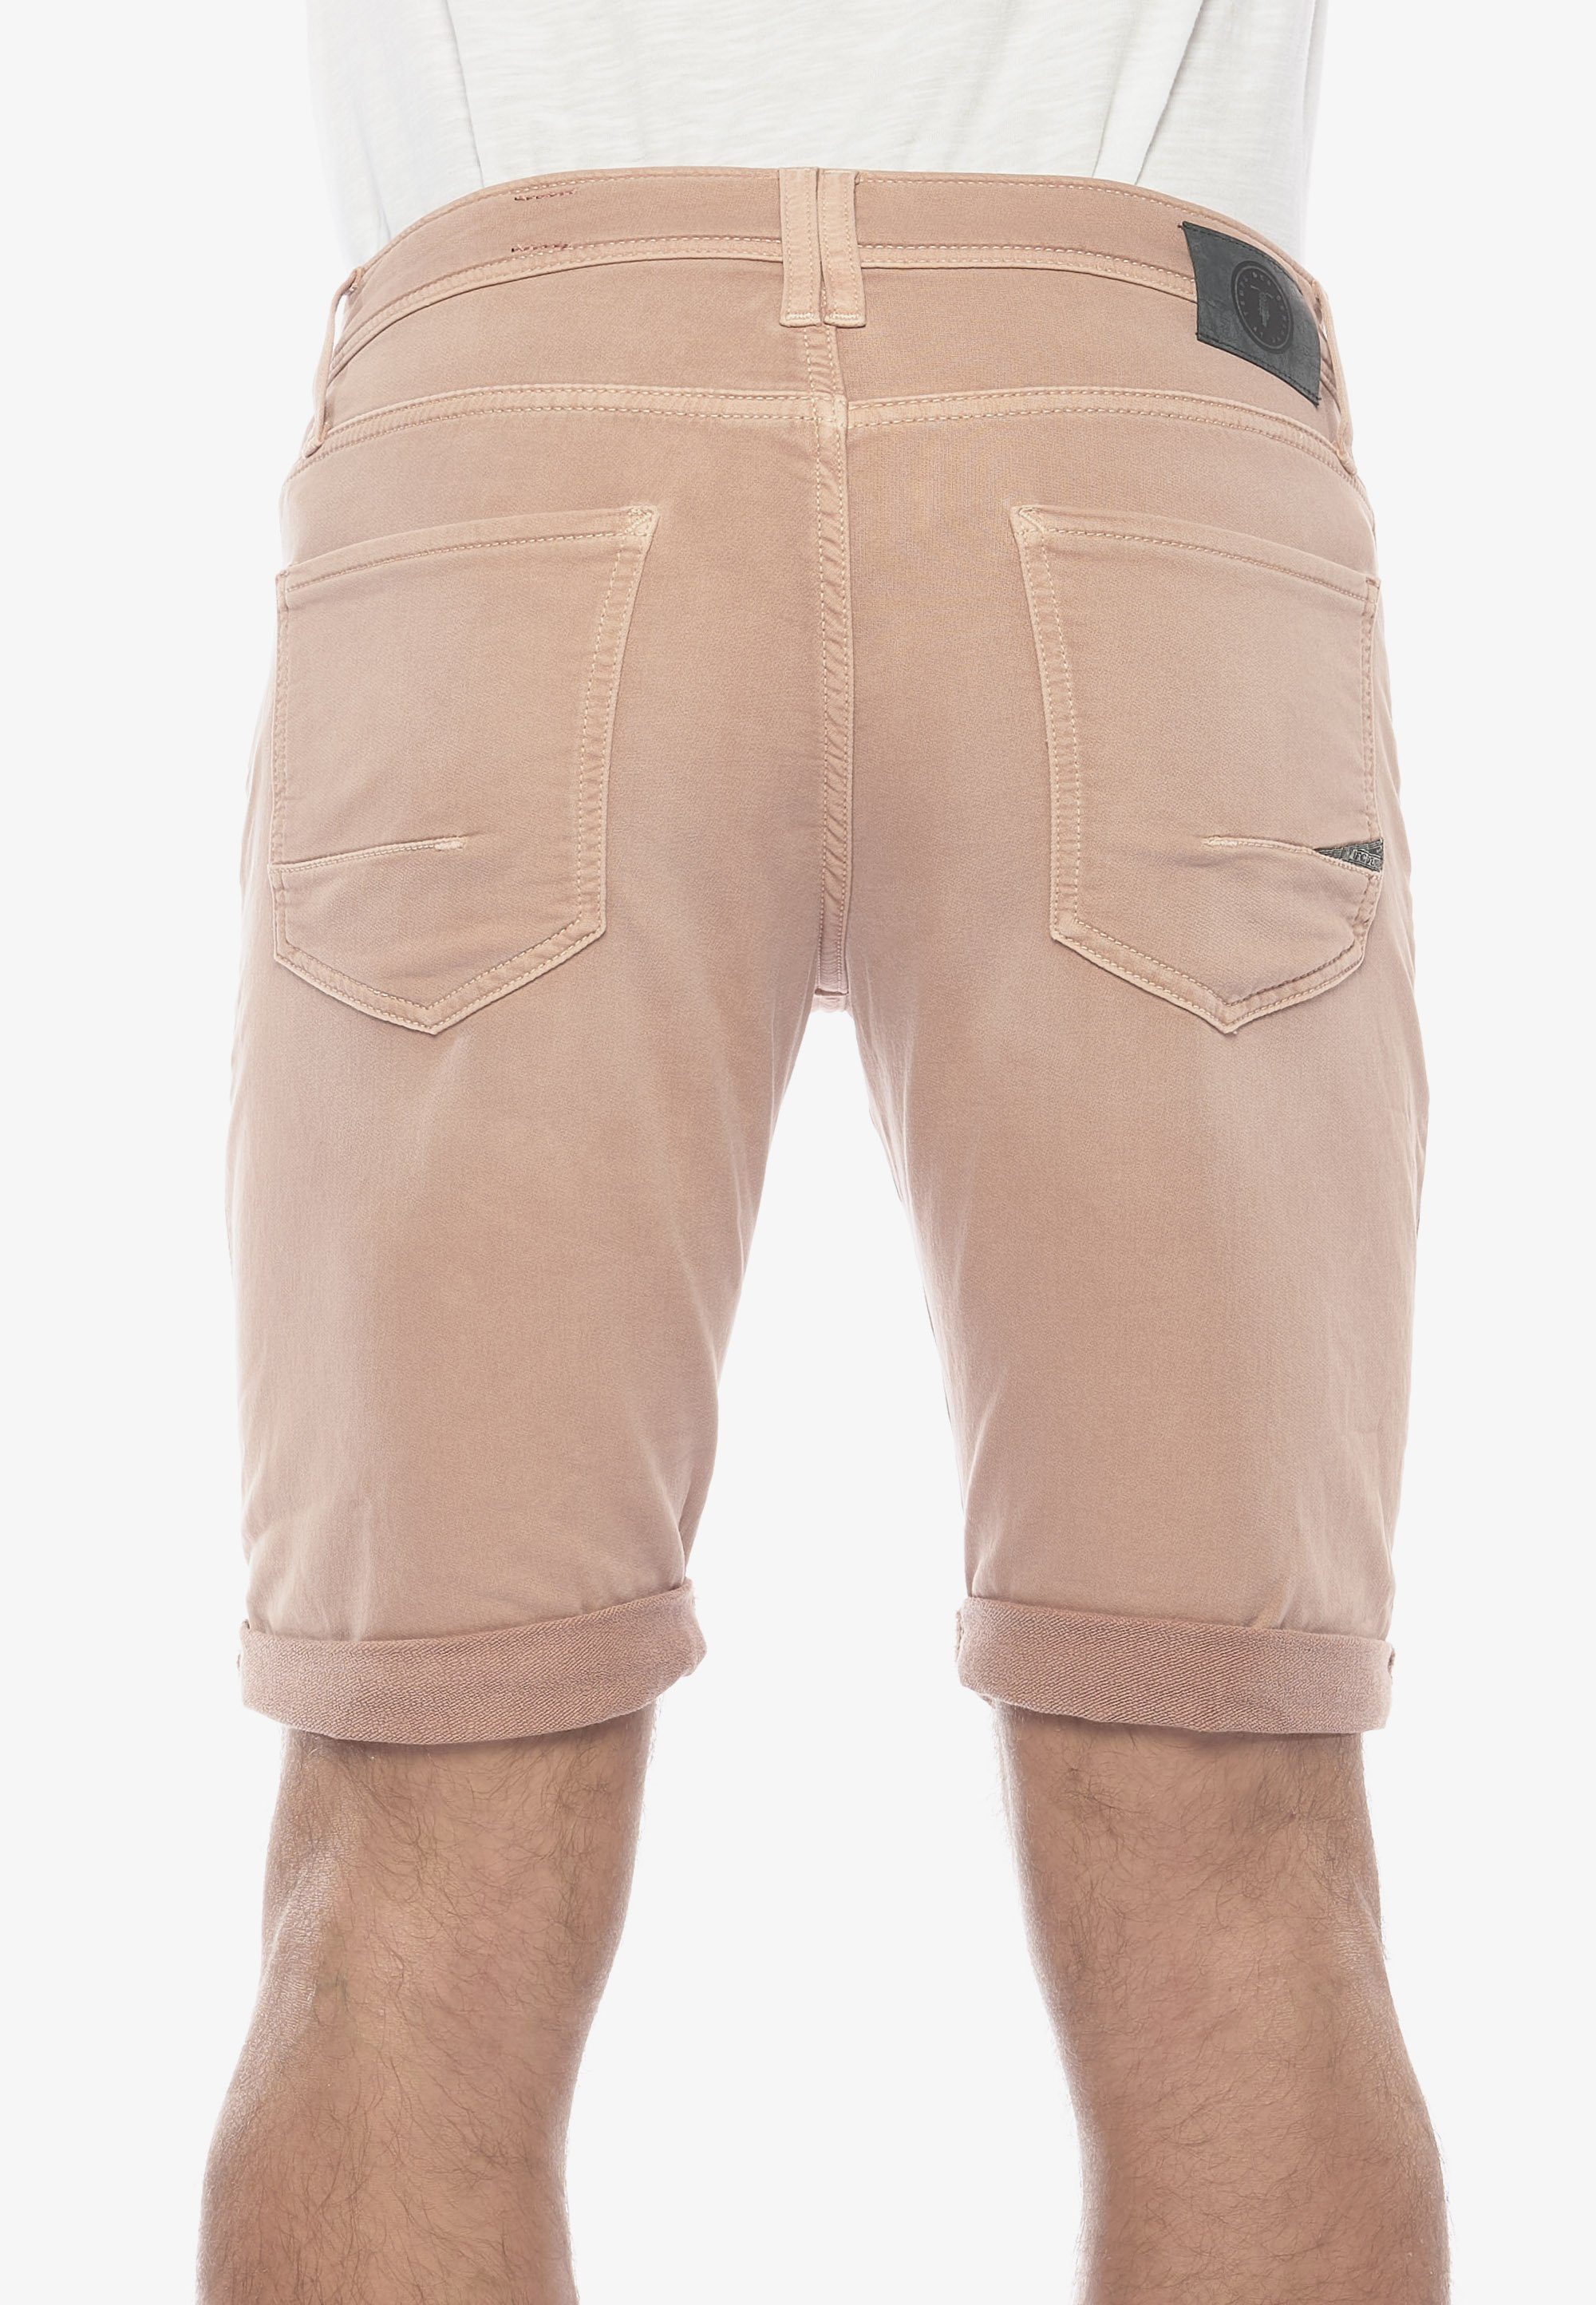 Le Temps klassischen Cerises BODO Shorts im 5-Pocket-Design Des braun